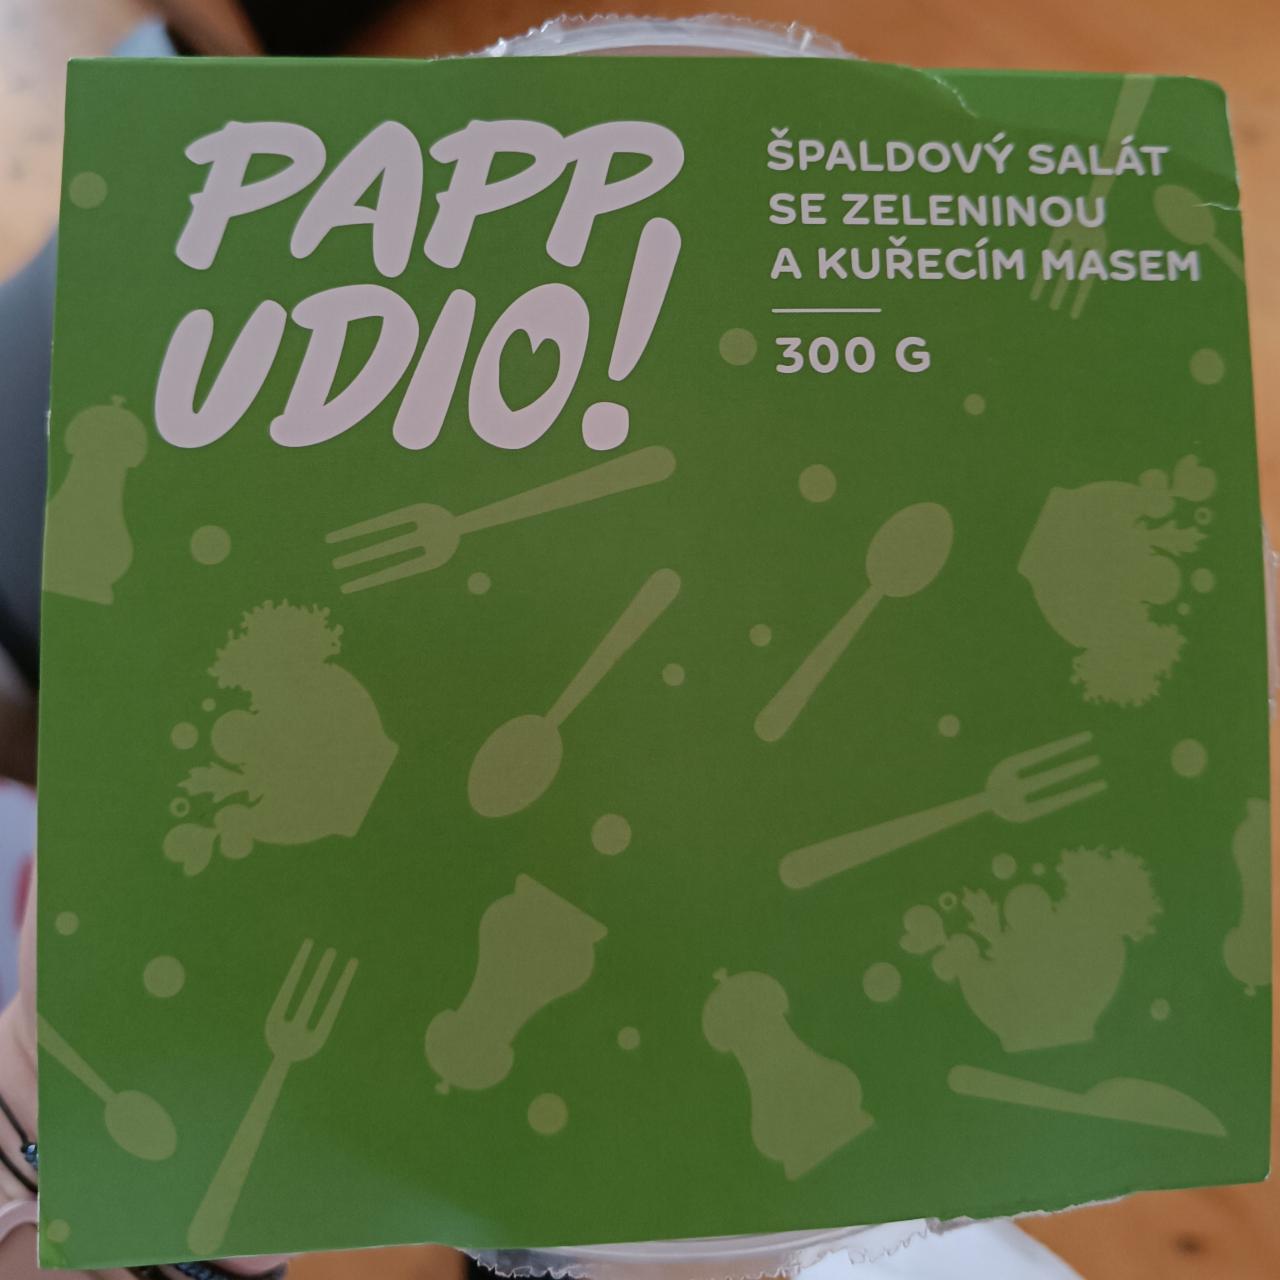 Fotografie - Špaldový salát se zeleninou a kuřecím masem Papp Udio!